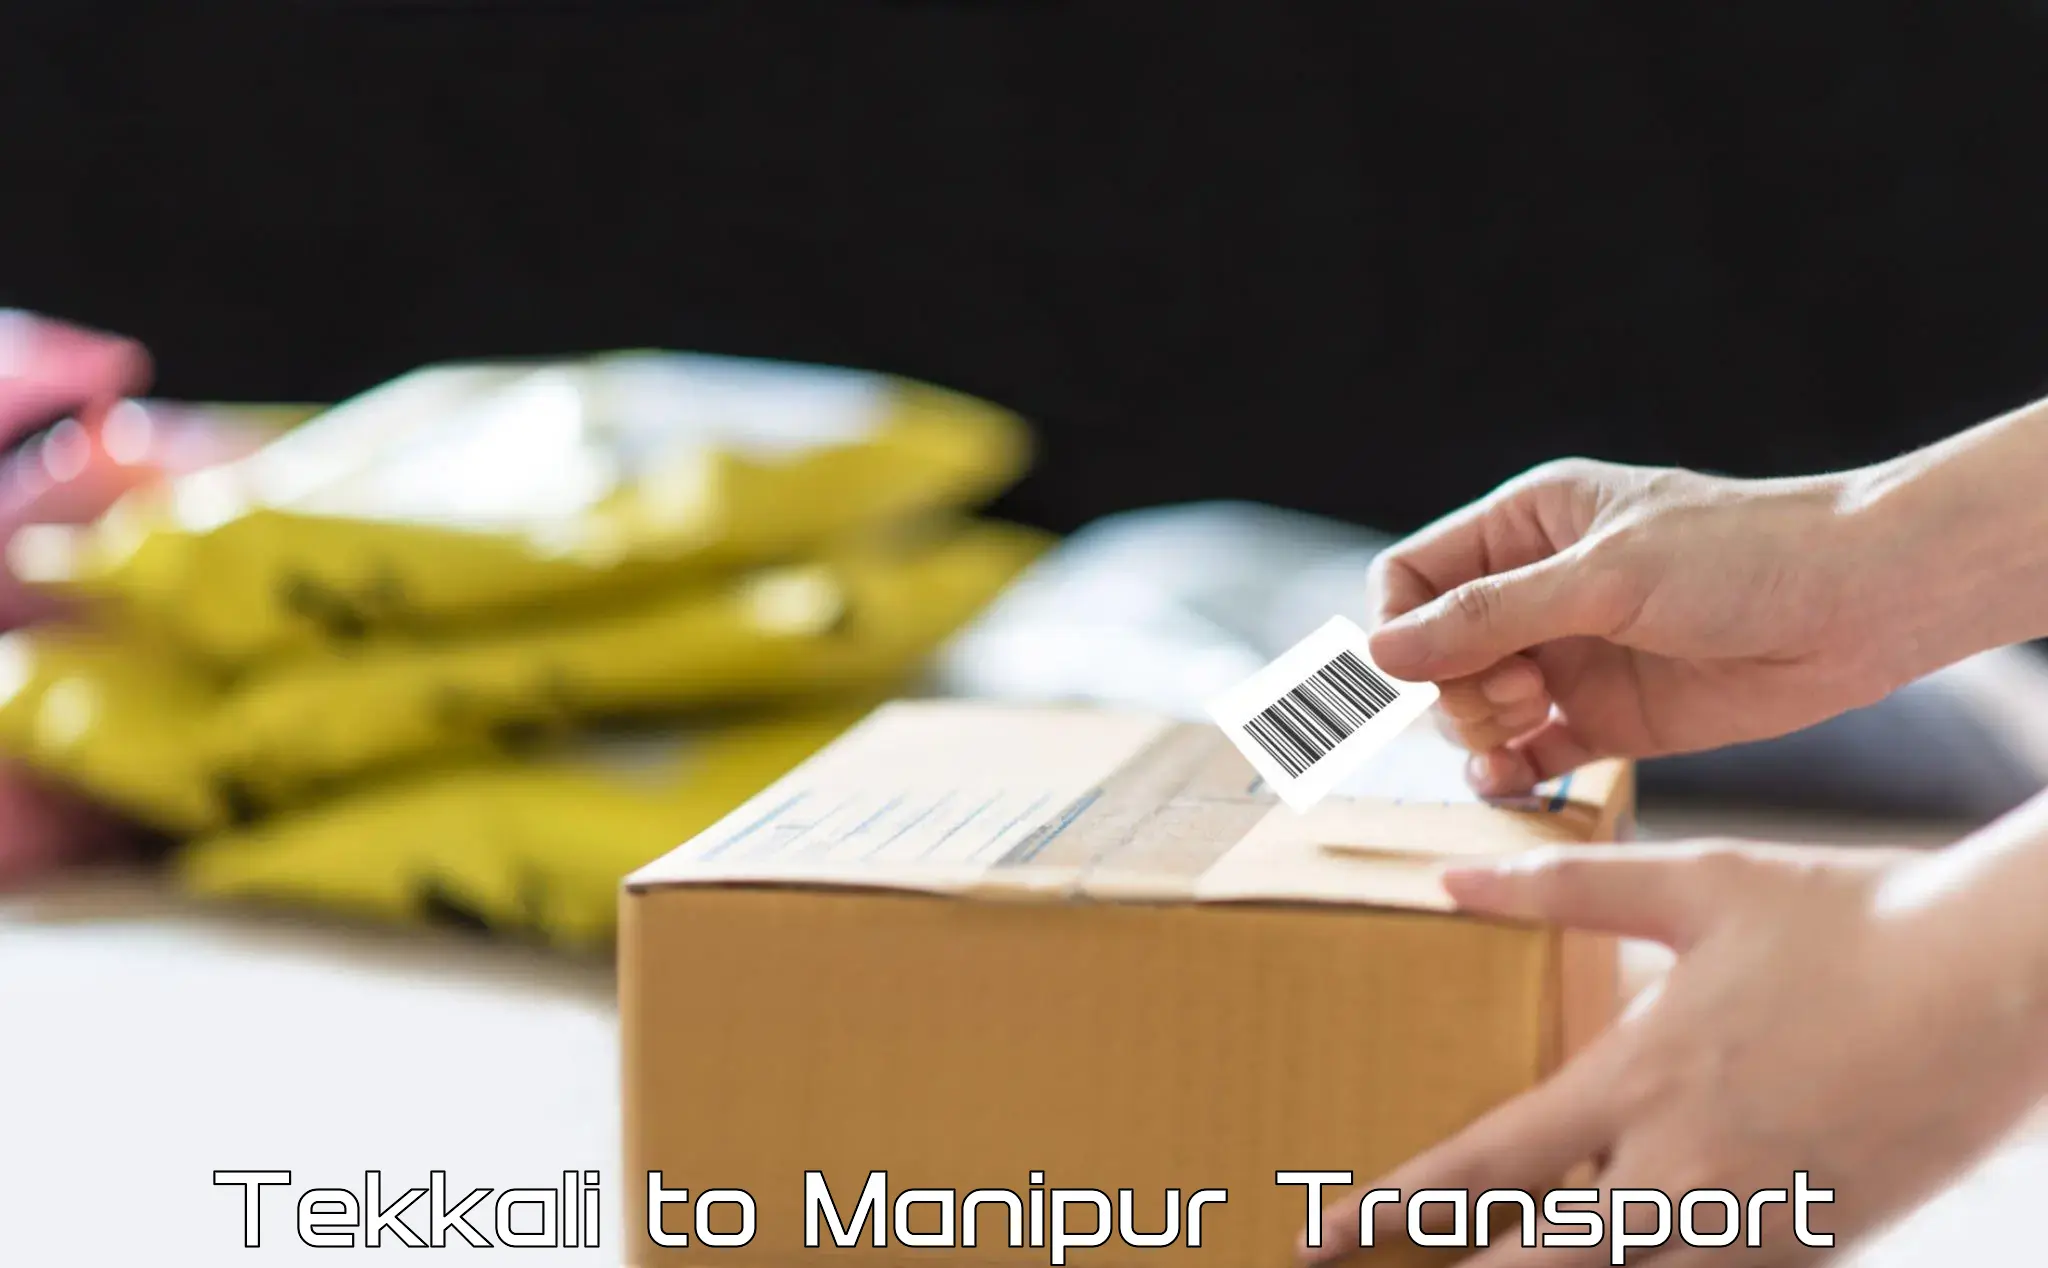 Shipping partner Tekkali to Manipur